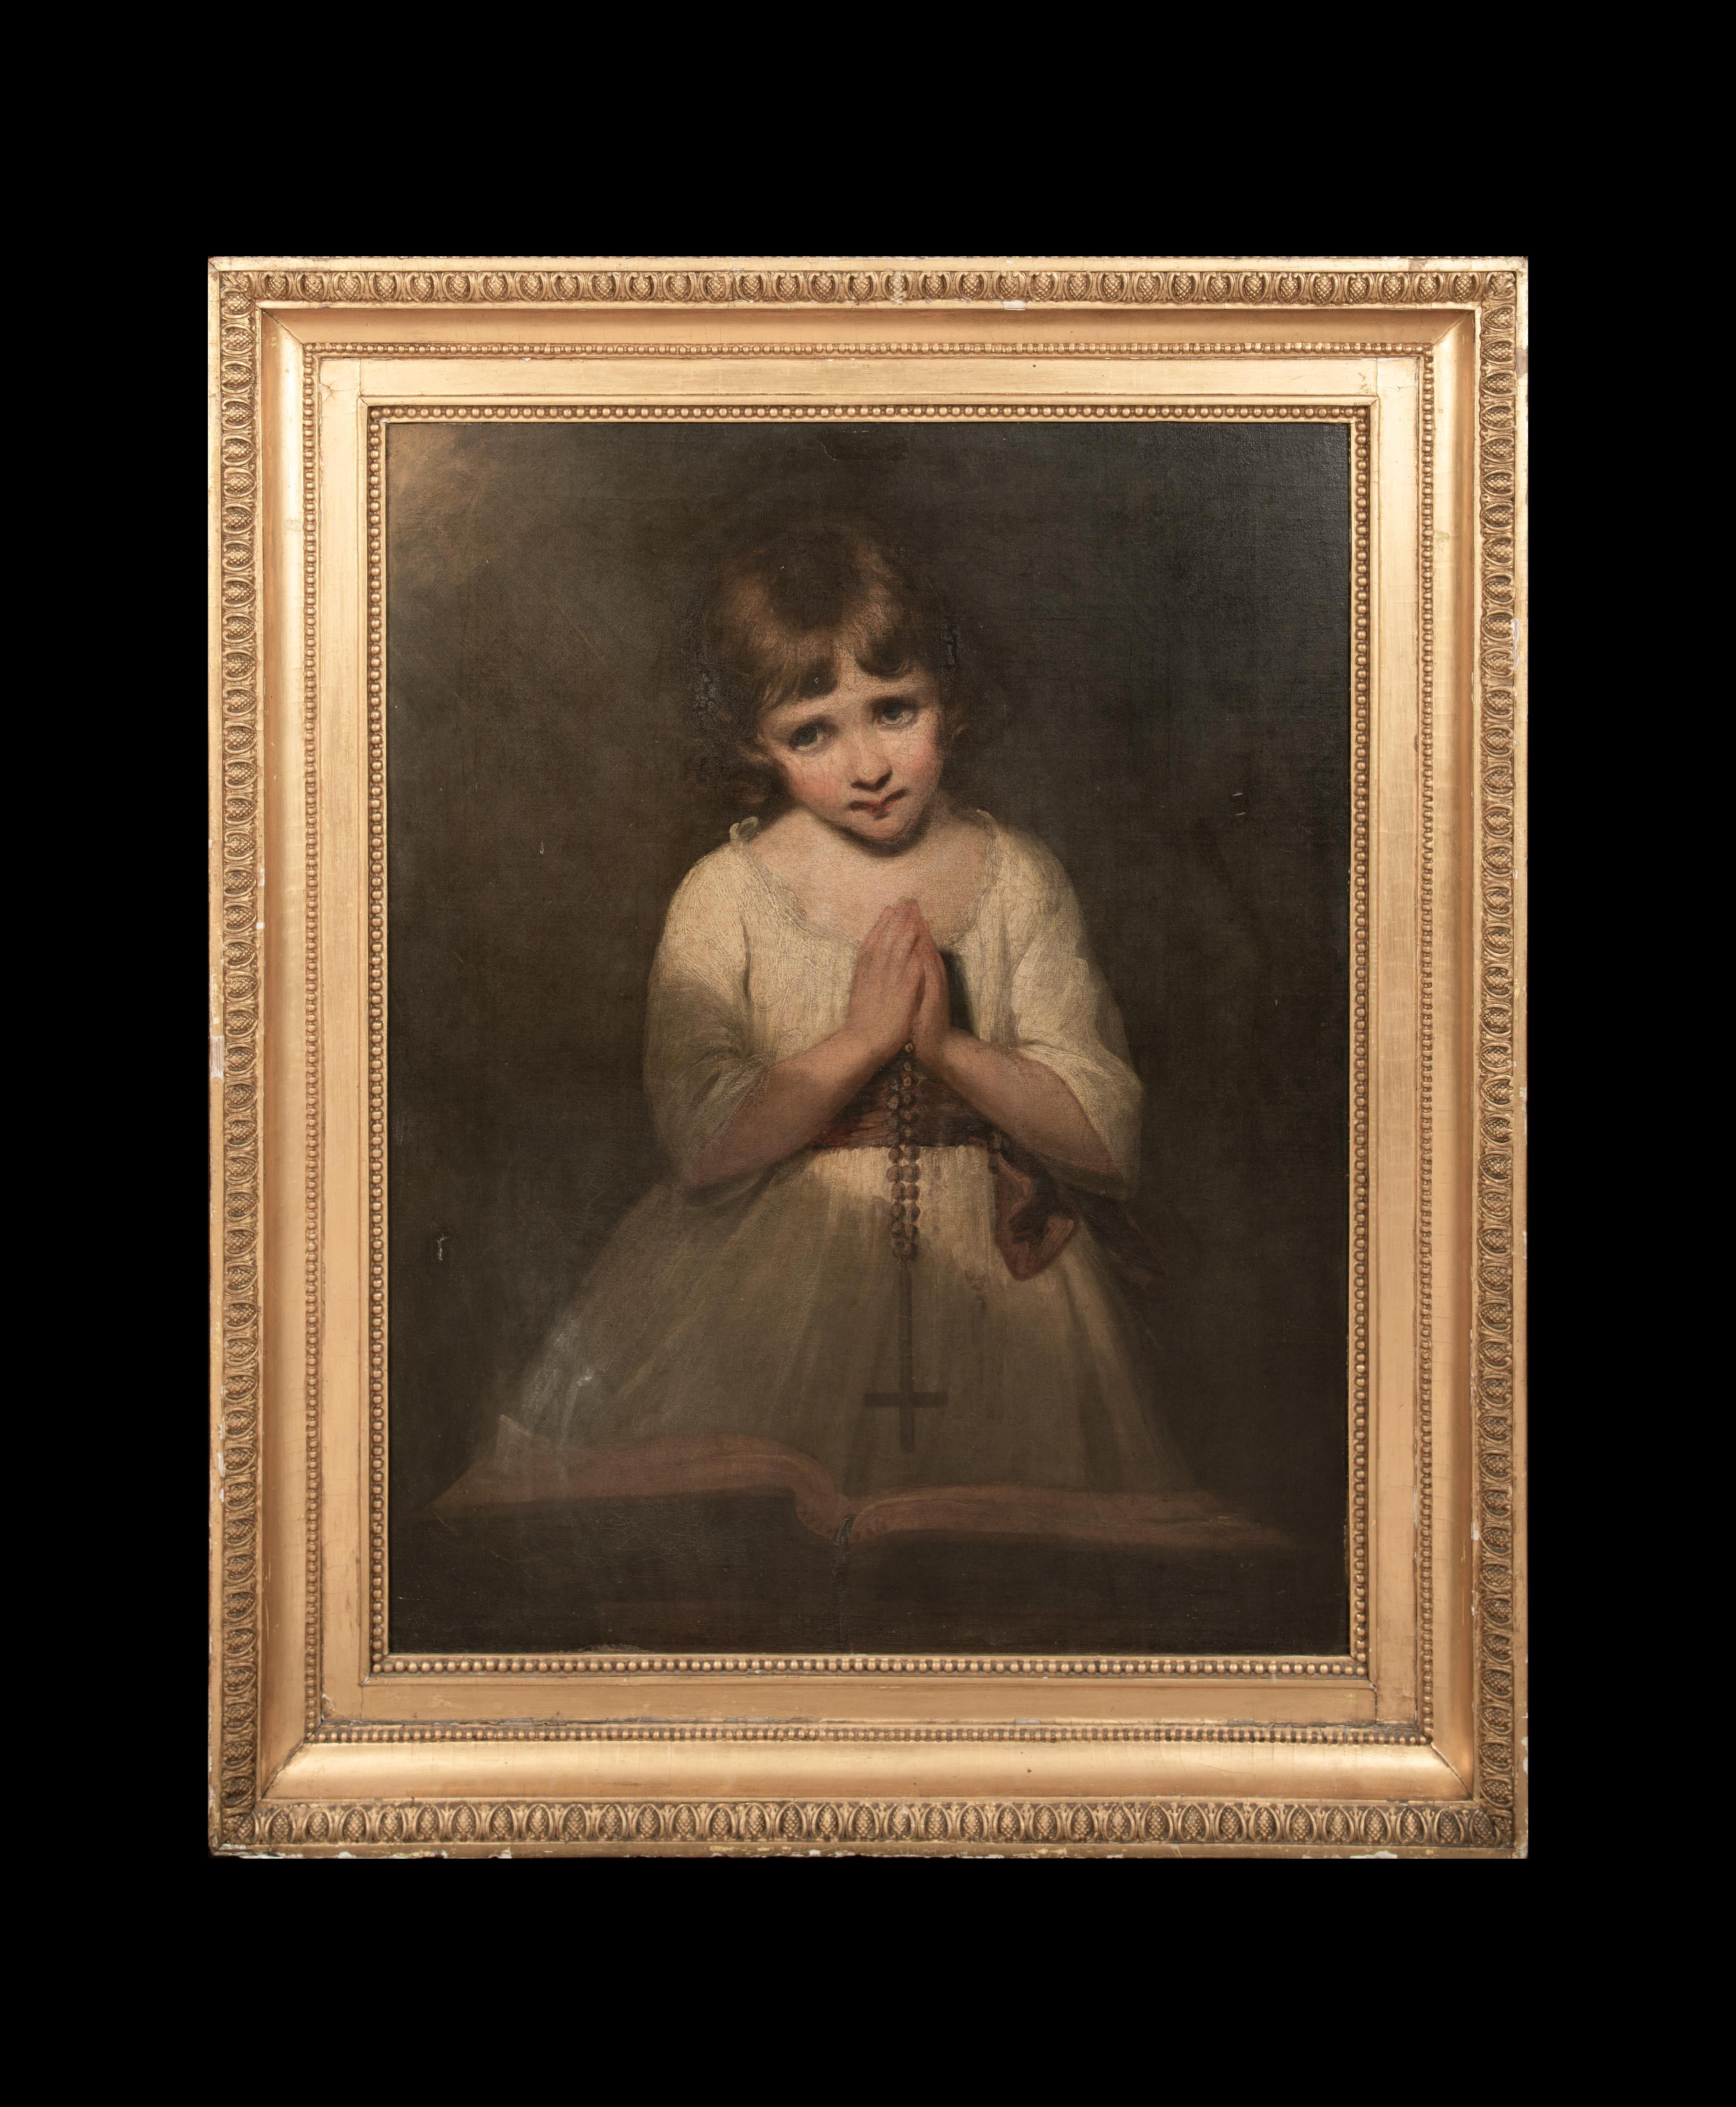 Das Gebet, 19. Jahrhundert

JOSHUA REYNOLDS (1723-1792)

Großes englisches Schulporträt eines Mädchens beim Gebet aus dem 18. Jahrhundert, Öl auf Leinwand, das Joshua Reynolds zugeschrieben wird. Ausgezeichnete Qualität und altersgemäßer Zustand,